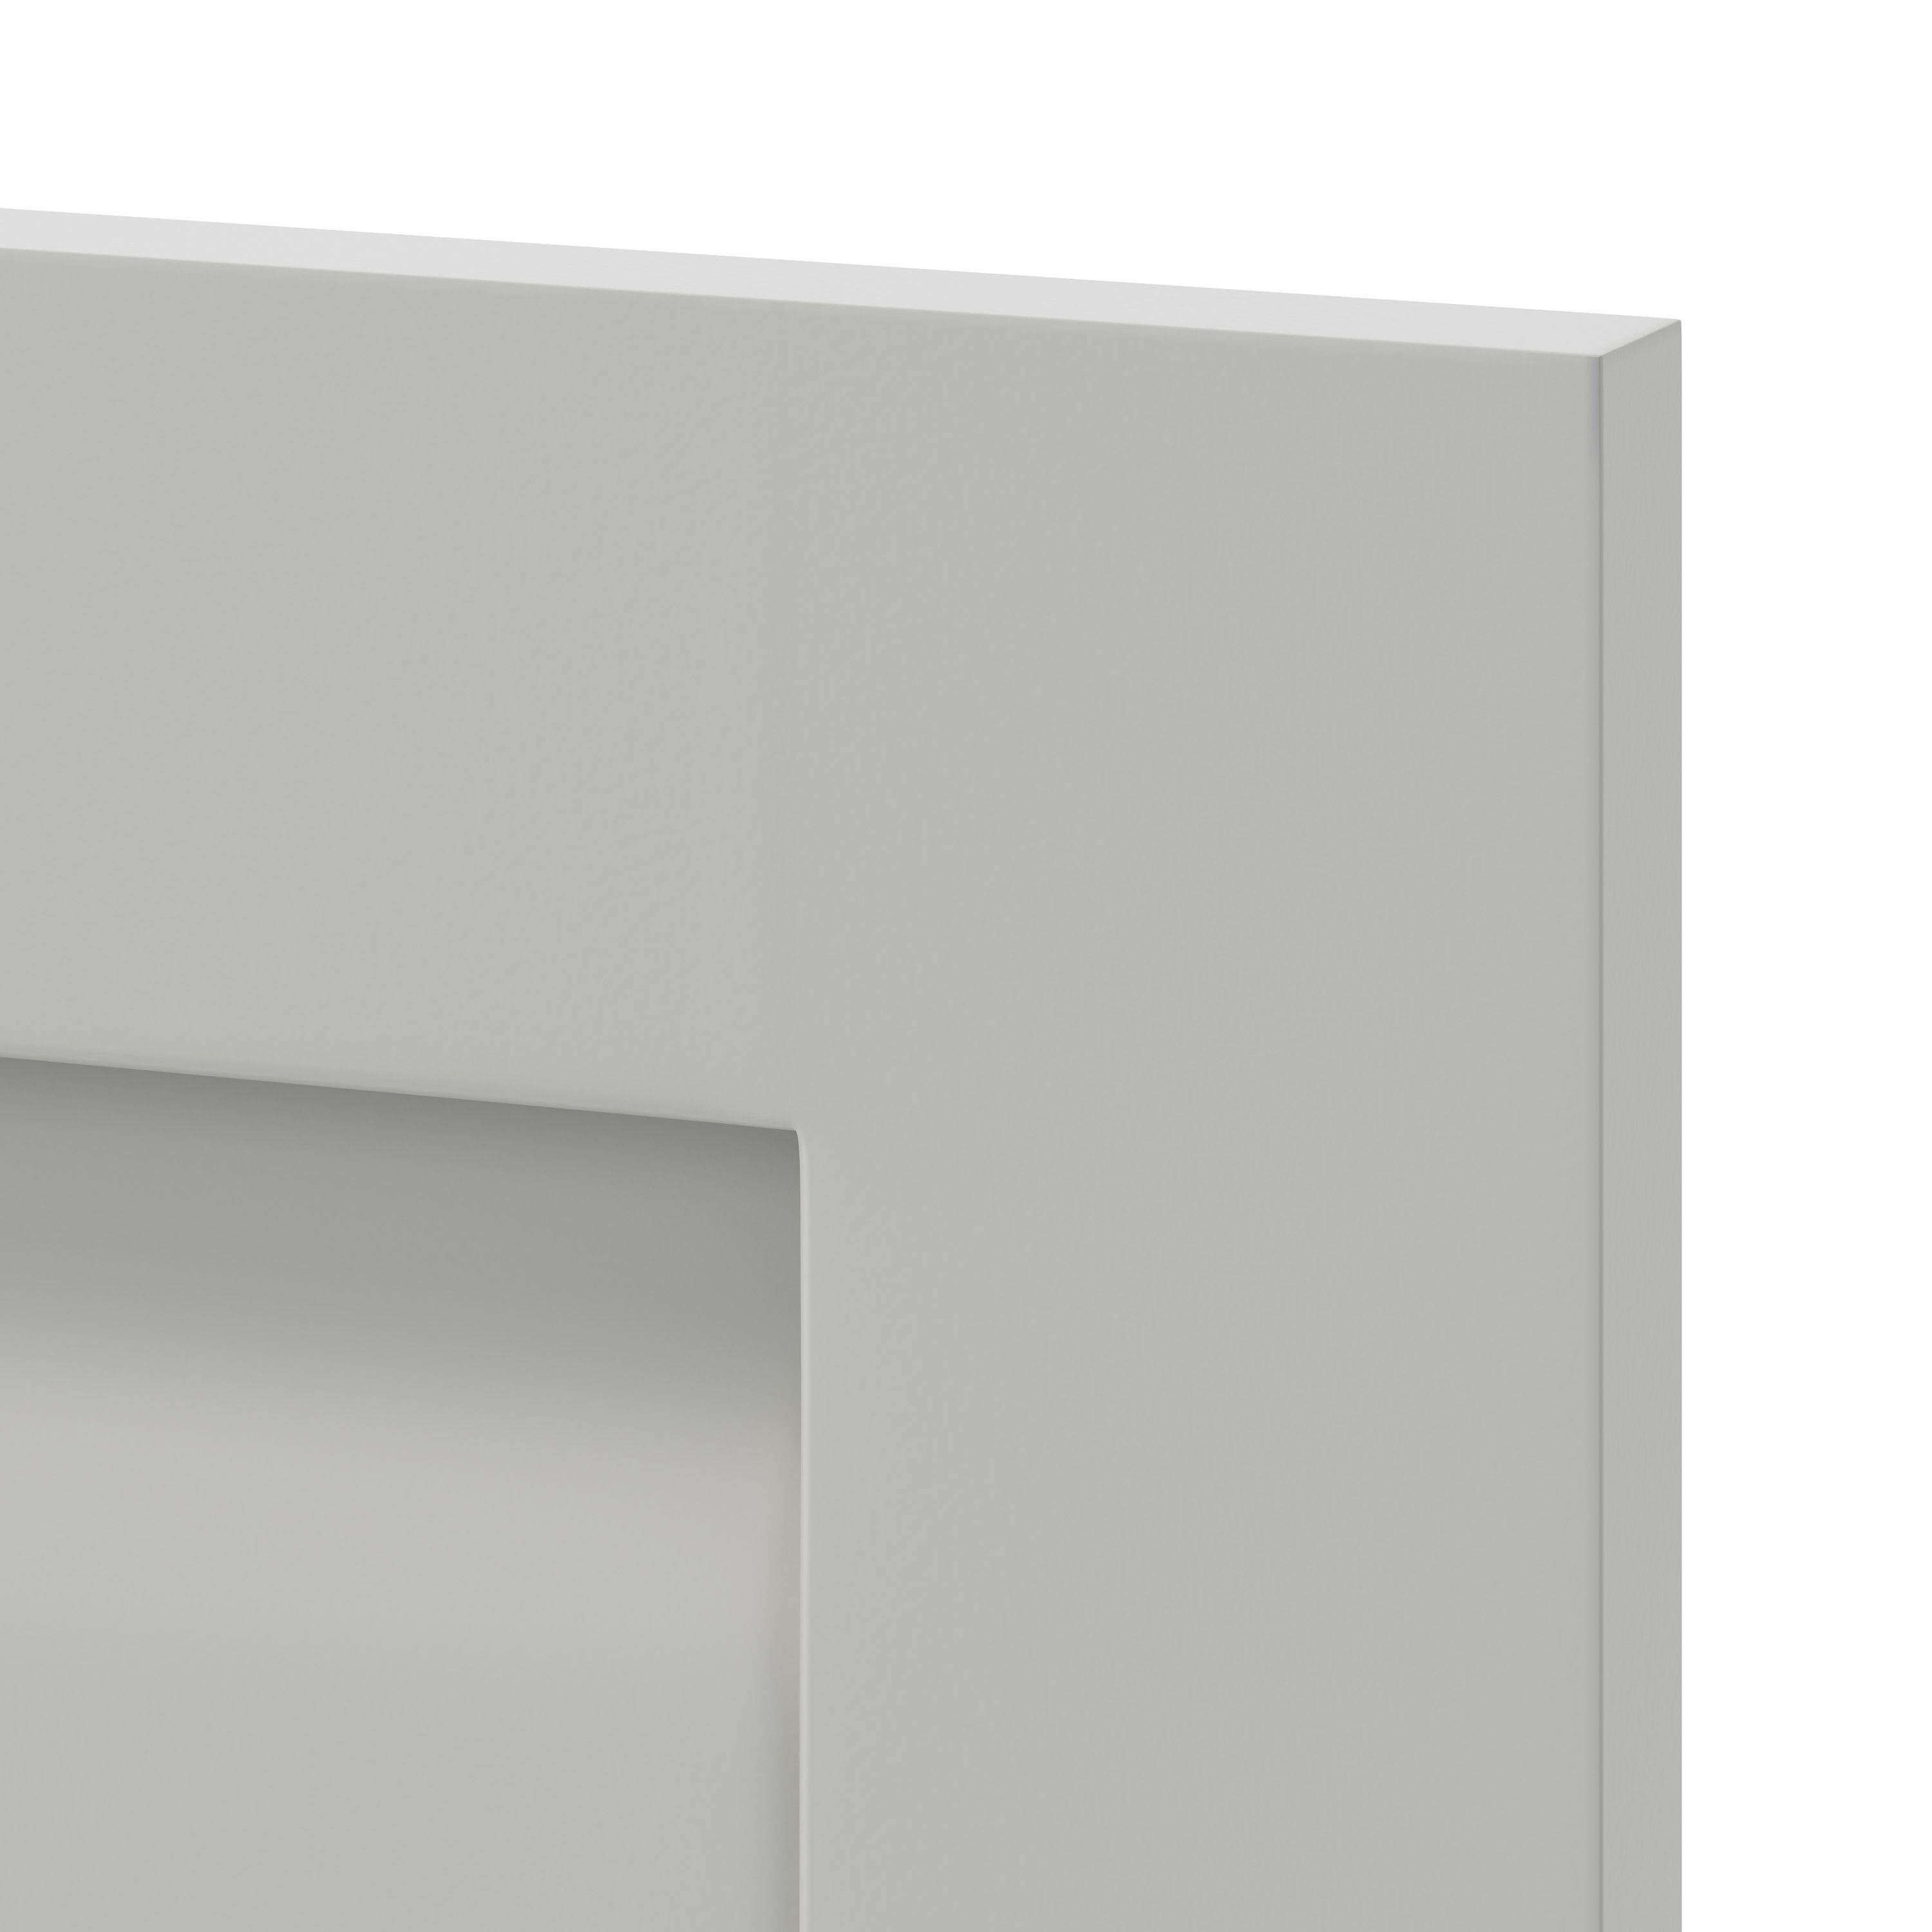 GoodHome Garcinia Matt stone integrated handle shaker Drawer front, bridging door & bi fold door, (W)800mm (H)356mm (T)20mm